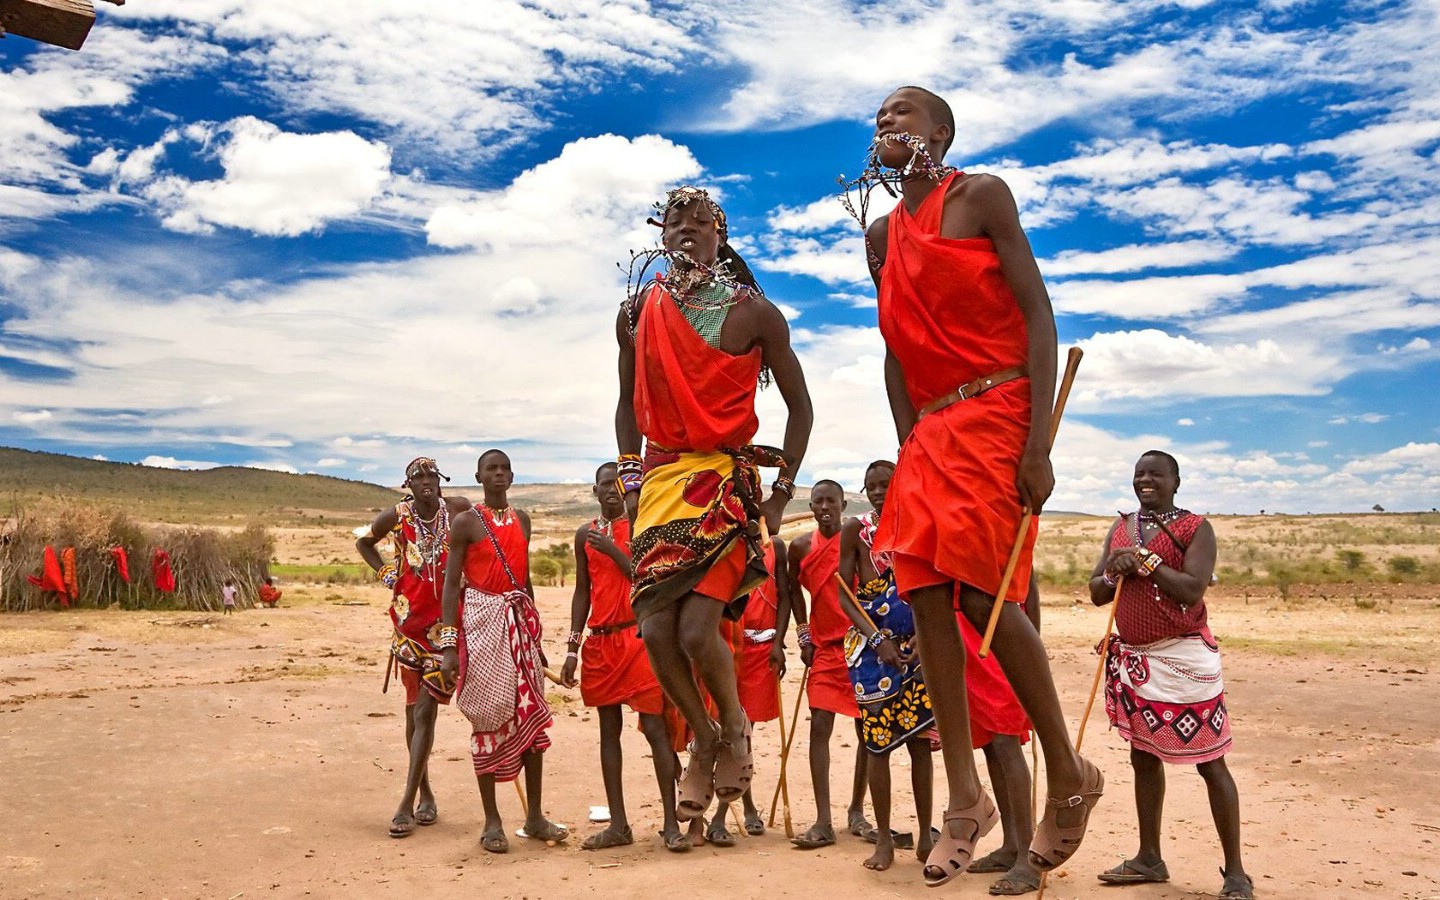 壁纸1440x900文化之旅 地理人文景观壁纸精选 第一辑 Maasai Warriors Dancing Maasai Mara National Reserve Kenya 肯尼亚马塞马拉国家保留地 马塞战士图片壁纸壁纸 文化之旅地理人文景观(一)壁纸 文化之旅地理人文景观(一)图片 文化之旅地理人文景观(一)素材 人文壁纸 人文图库 人文图片素材桌面壁纸